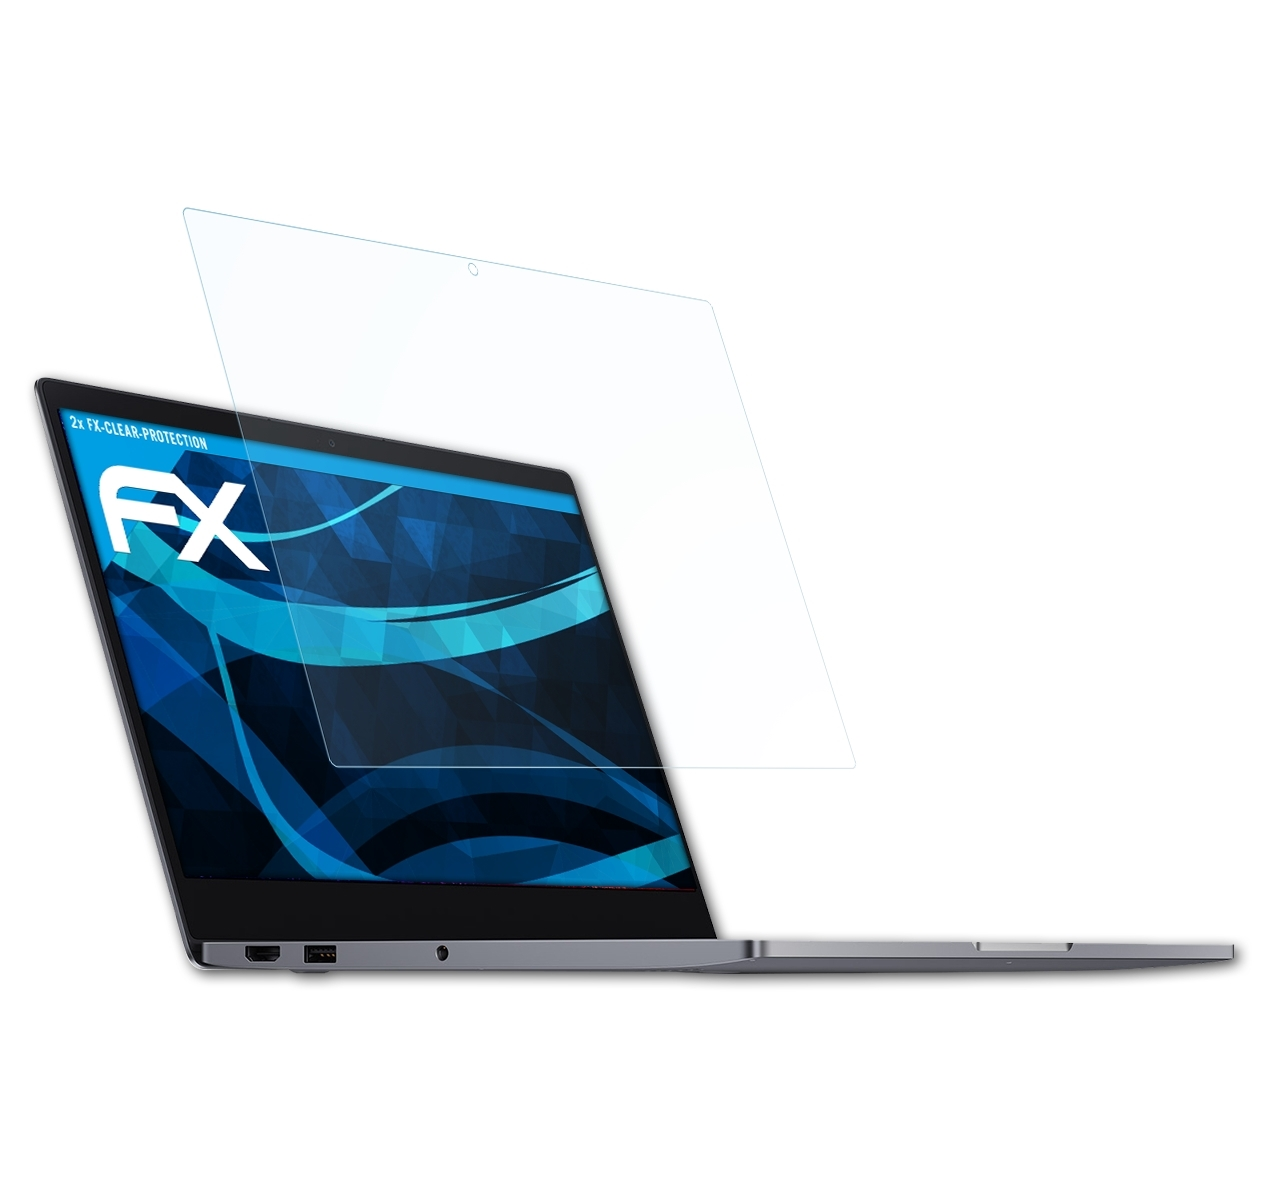 ATFOLIX 2x FX-Clear 13.3) Mi Notebook Displayschutz(für Xiaomi Air